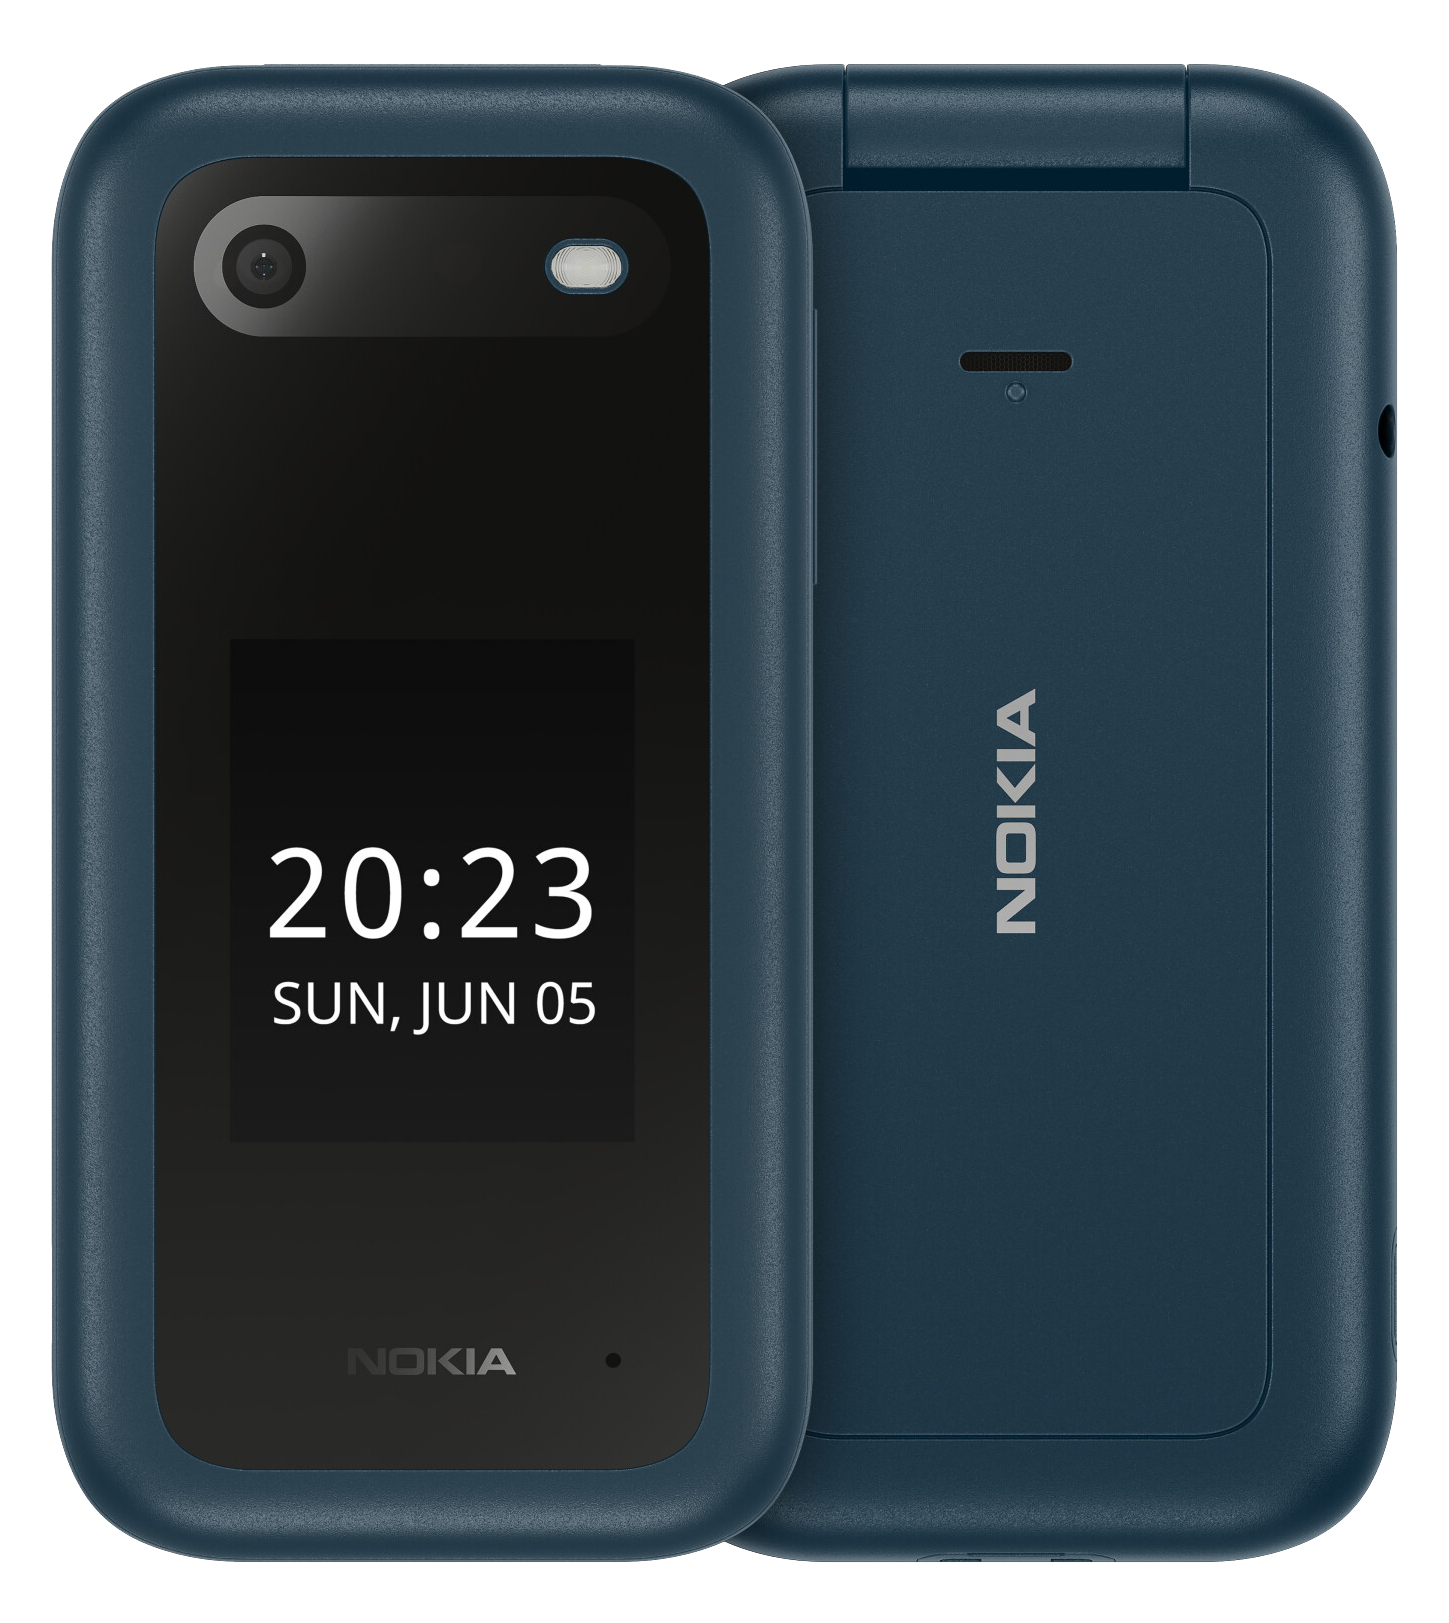 Nokia 2660 FLIP blau - Ohne Vertrag